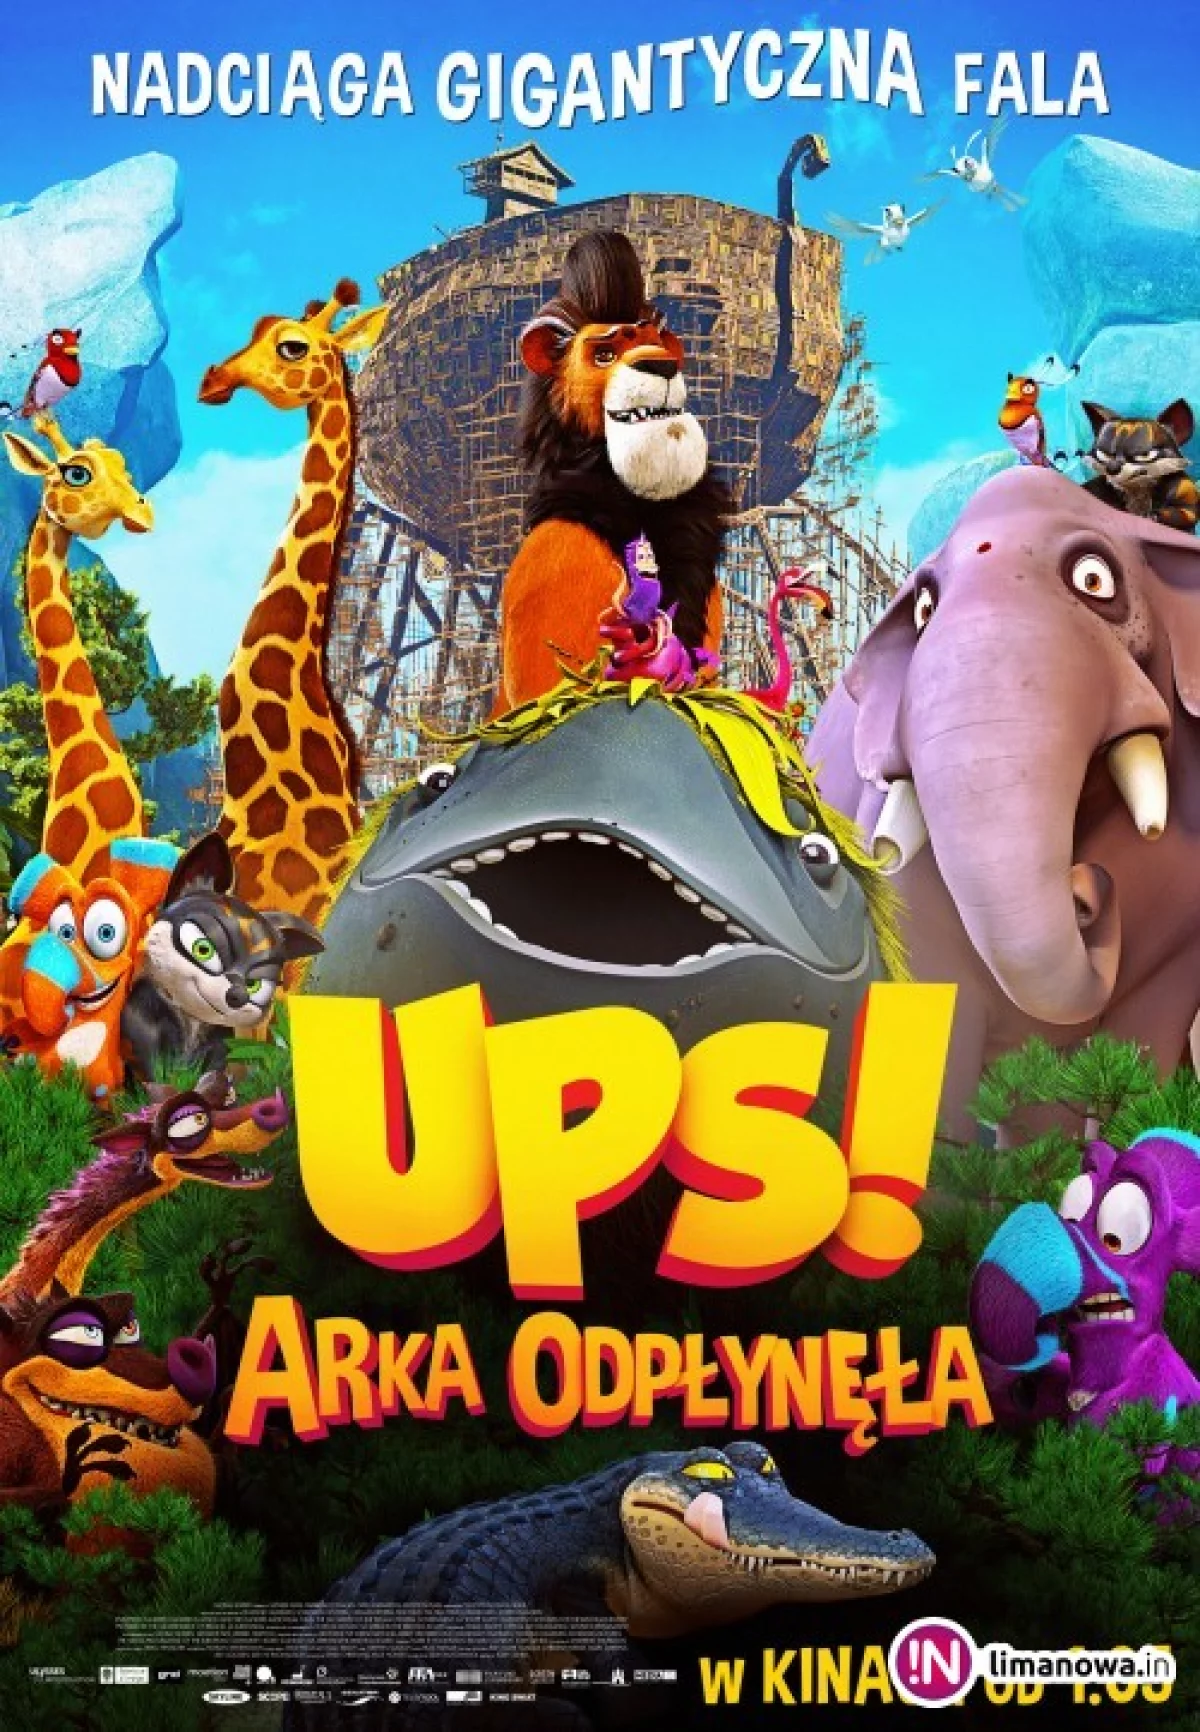 Premiera w kinie Klaps - „Ups! Arka odpłynęła” na ekranie od 2 maja